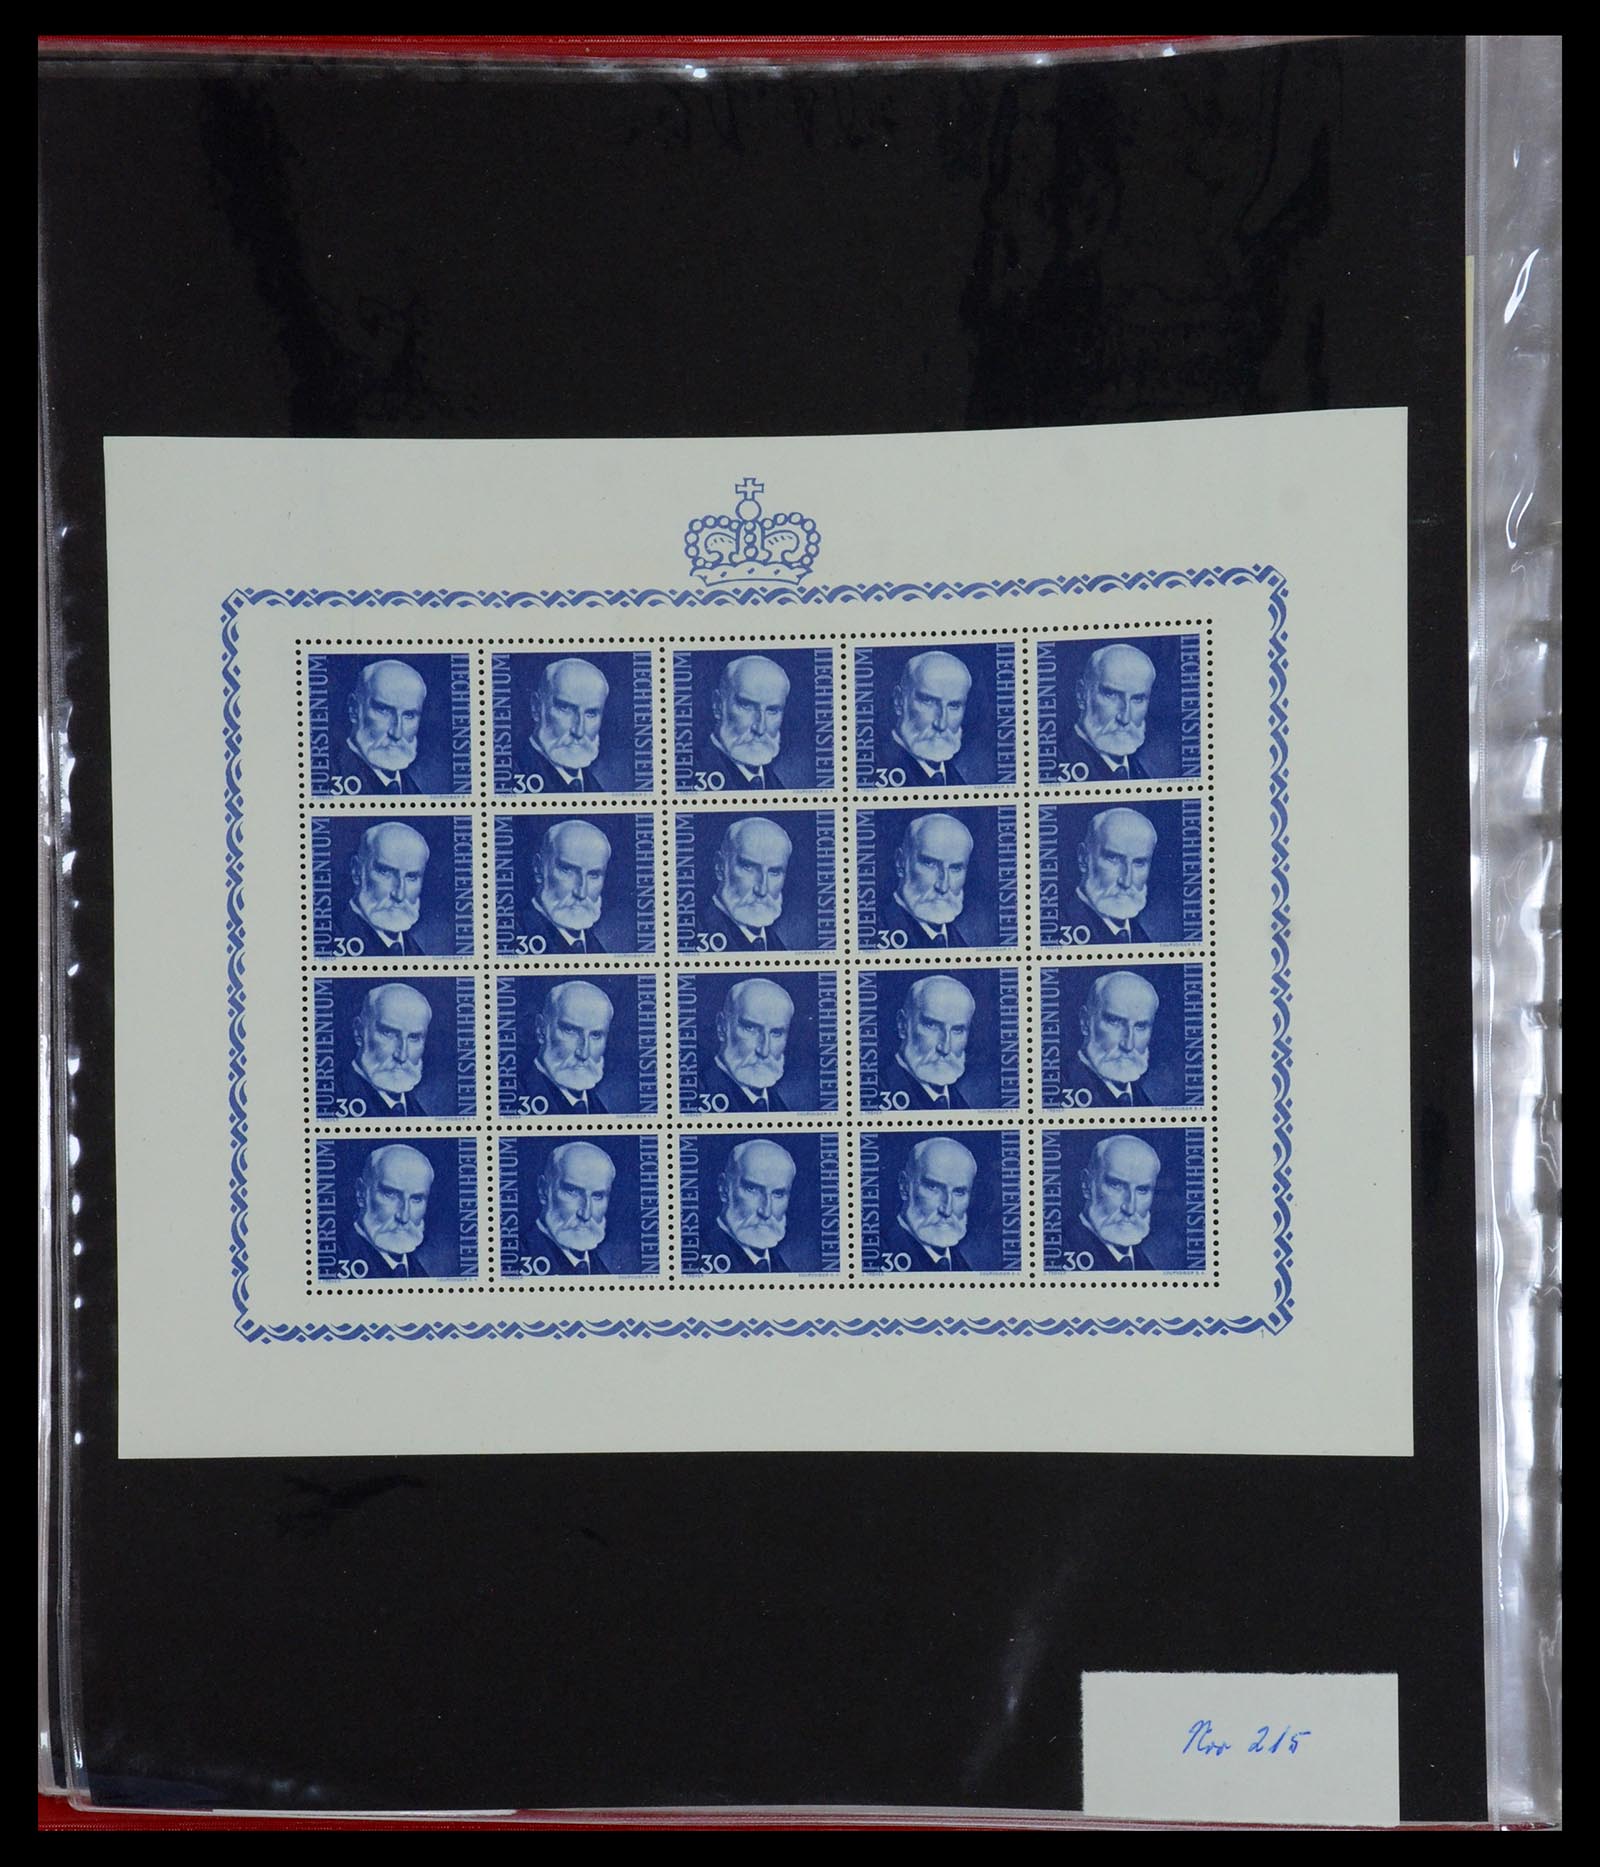 36280 032 - Stamp collection 36280 Liechtenstein souvenir sheets and sheetlets 1934-